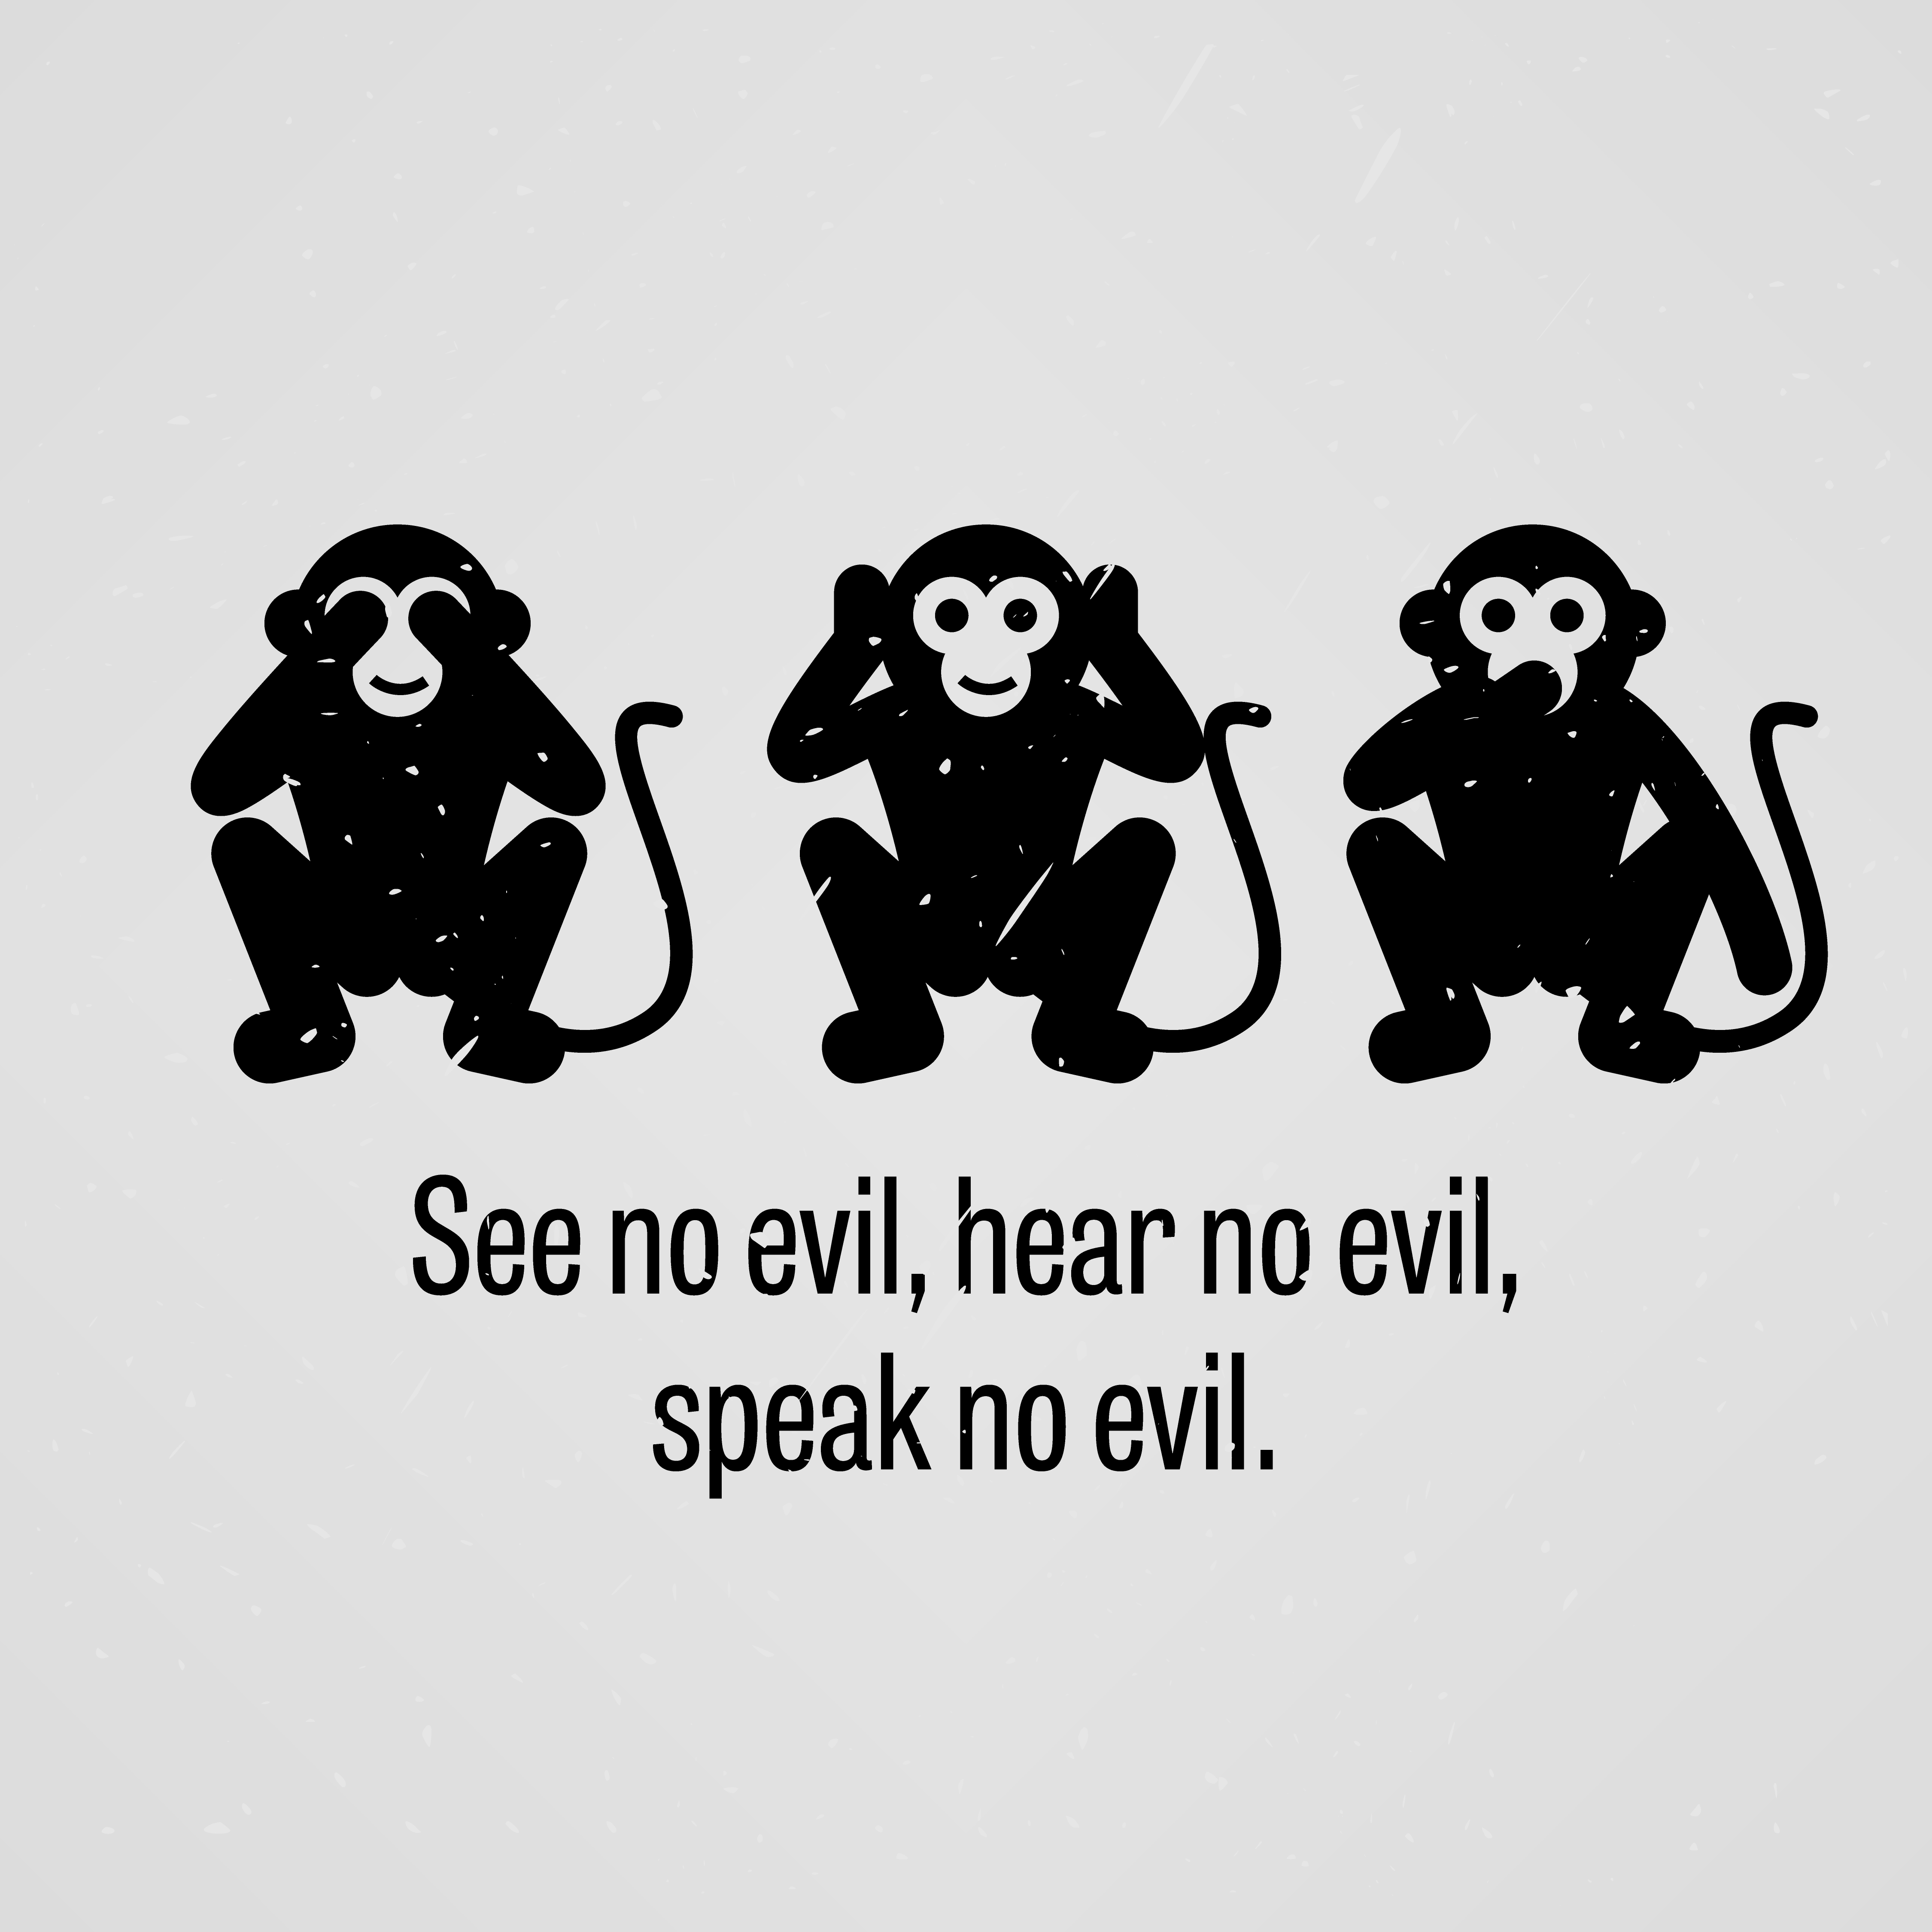 See No Evil Hear No Evil Speak No Evil Download Free Vectors Clipart Graphics Vector Art